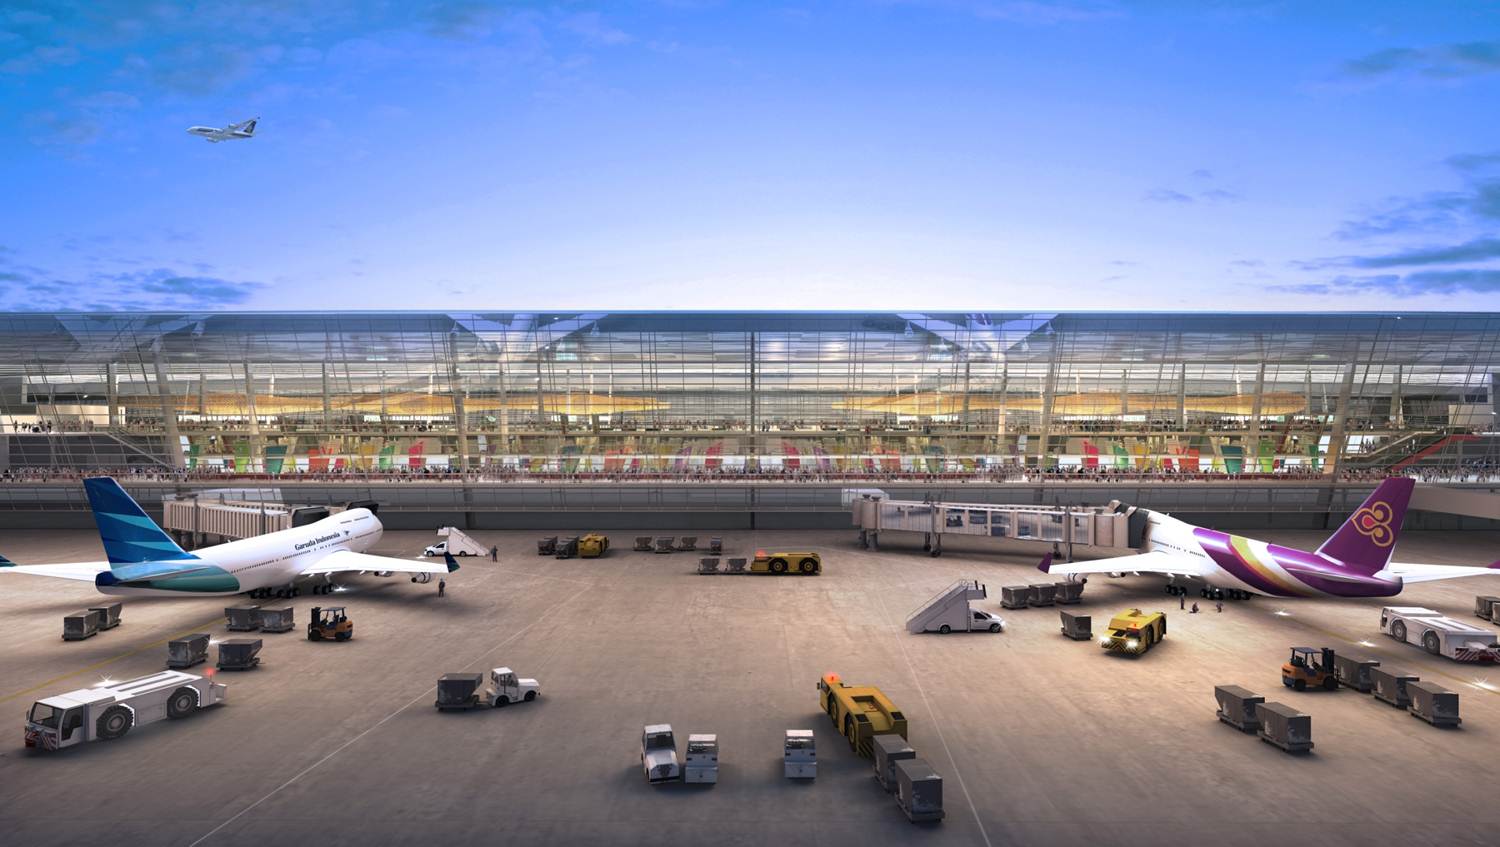 Ini Dia Desain Terbaru Terminal 3 Bandara Internasional Soekarno-Hatta